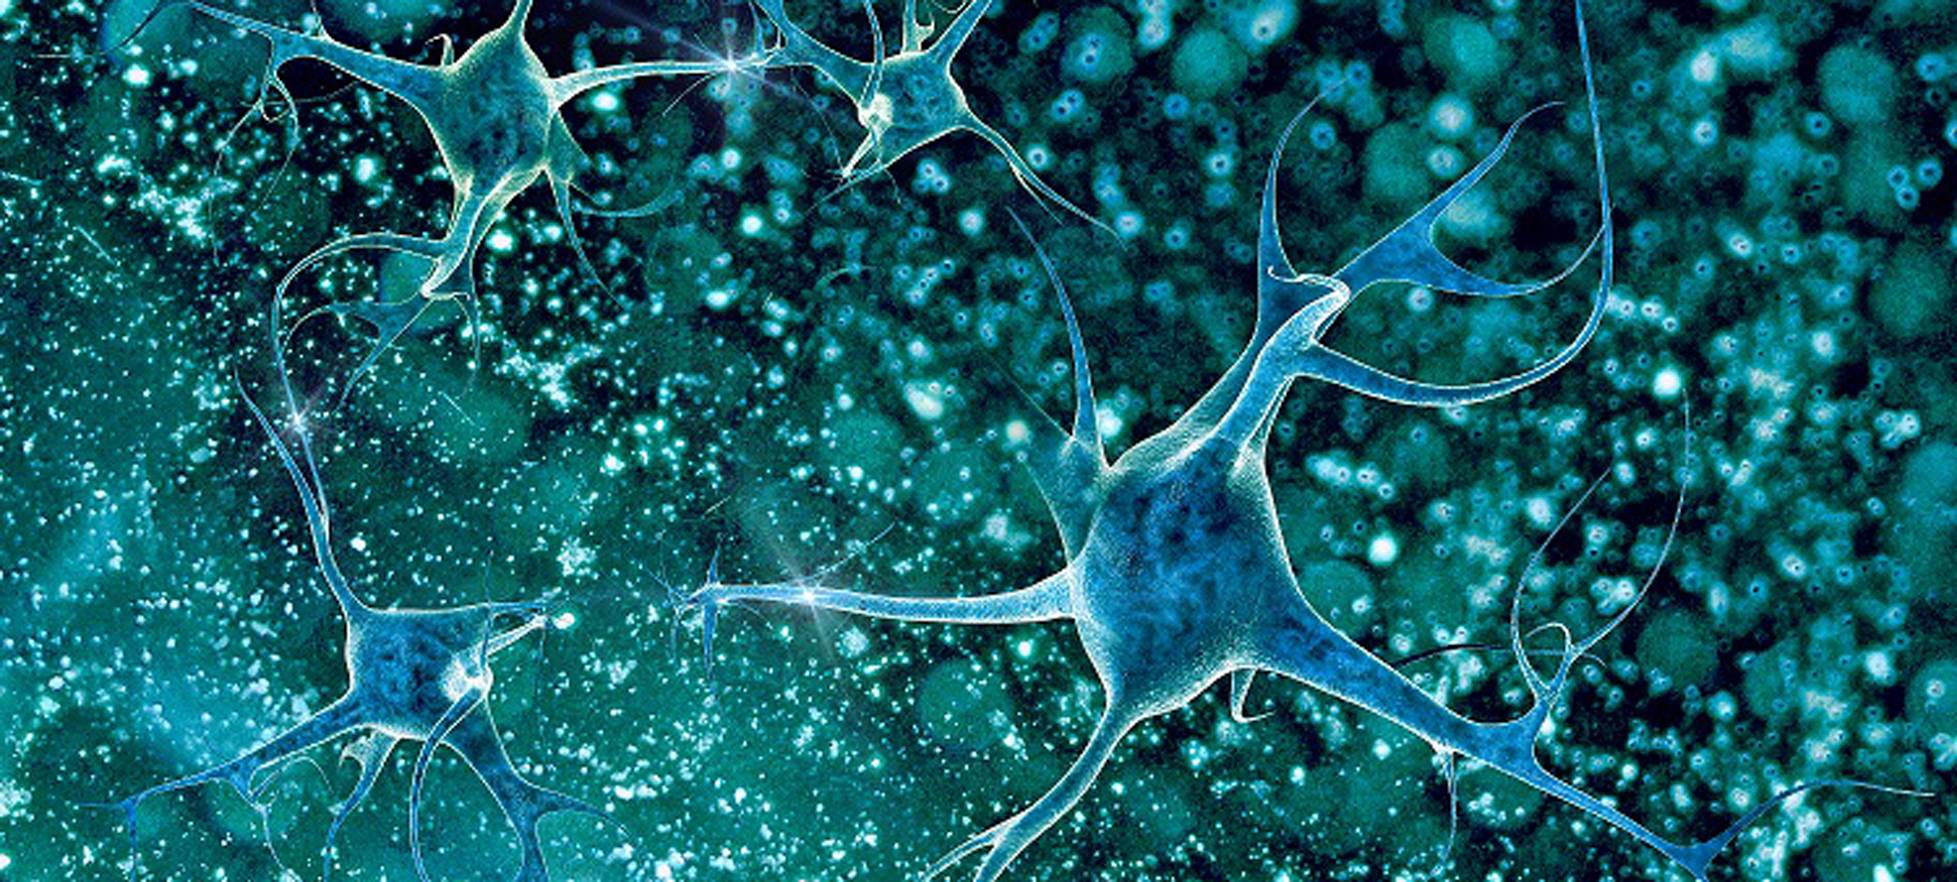 Neuronal cells